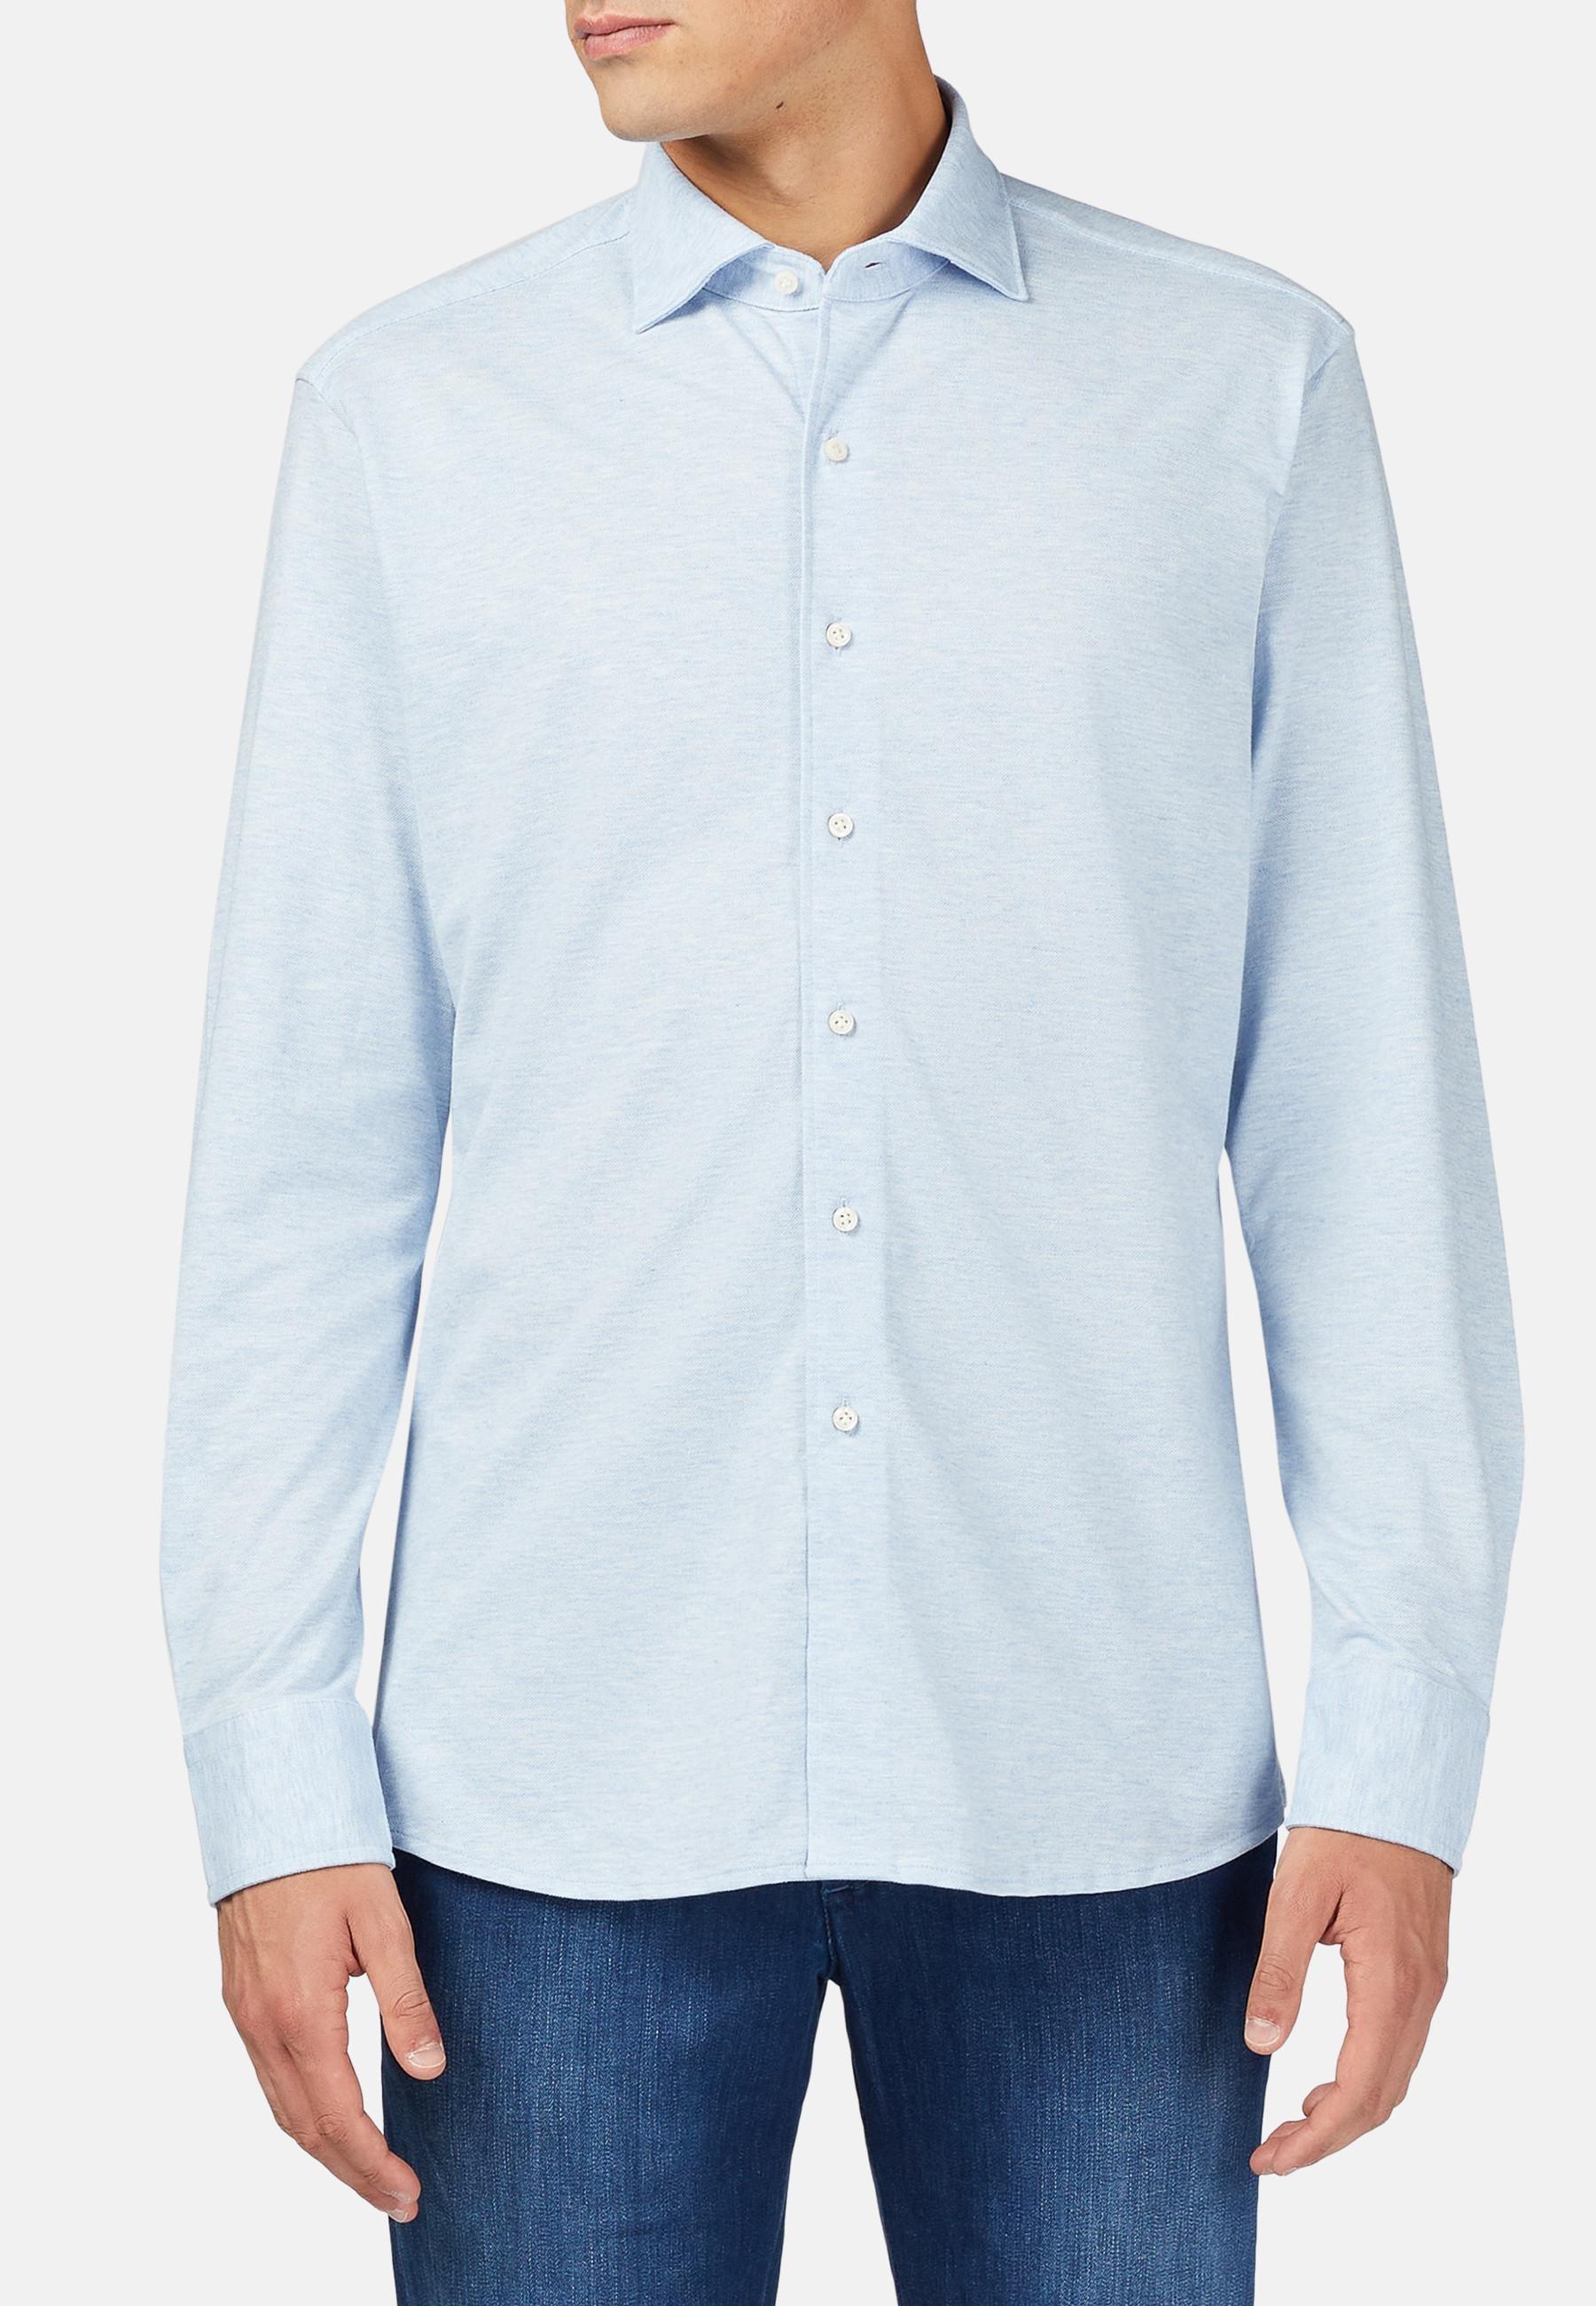 Boggi Milano - Blue Cotton Pique Polo Shirt